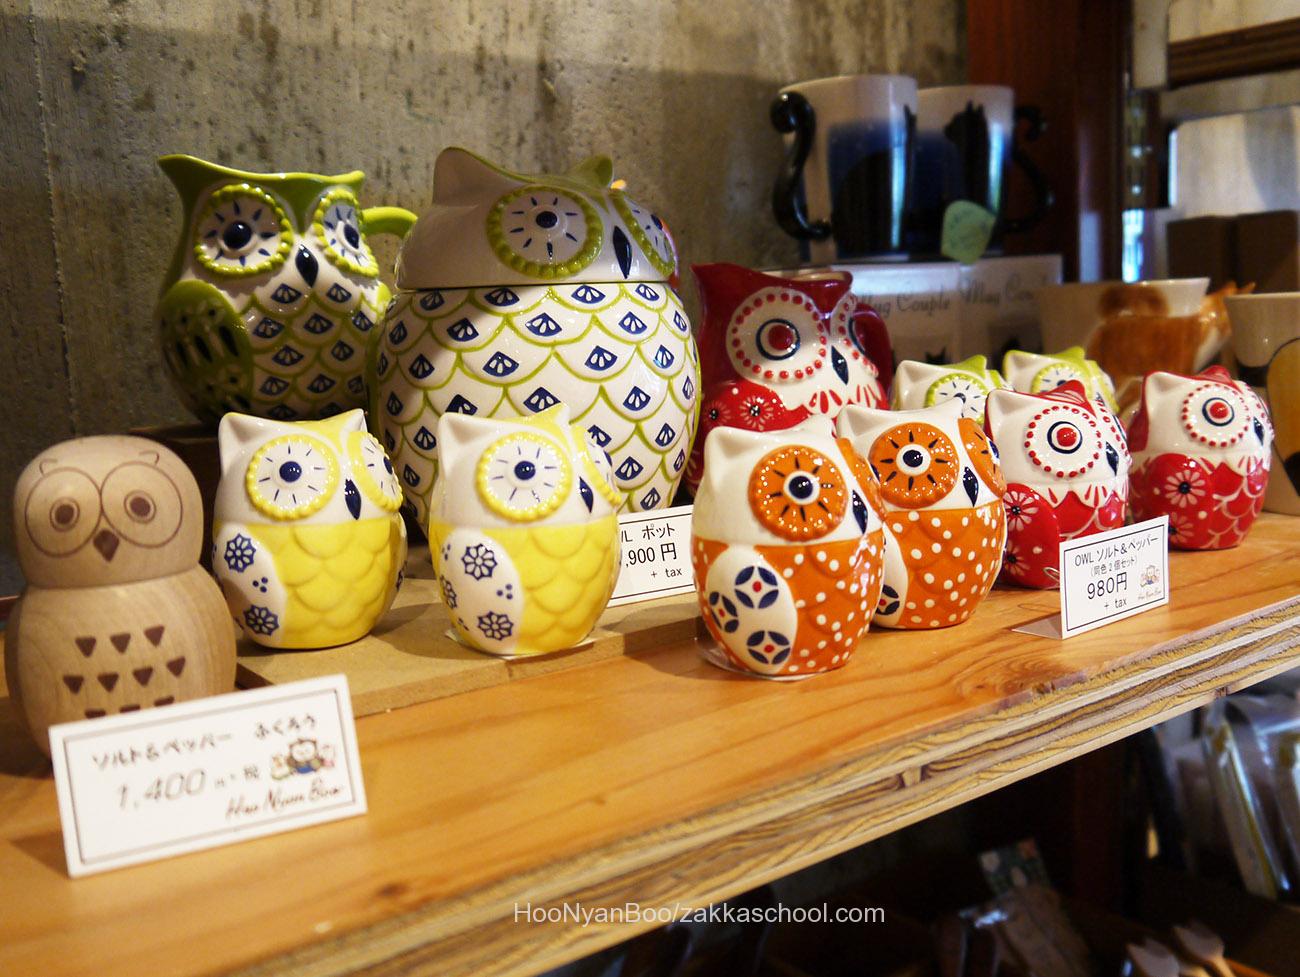 奈良でフクロウ、梟、ふくろう雑貨のお店を開業。雑貨屋さんは楽しい